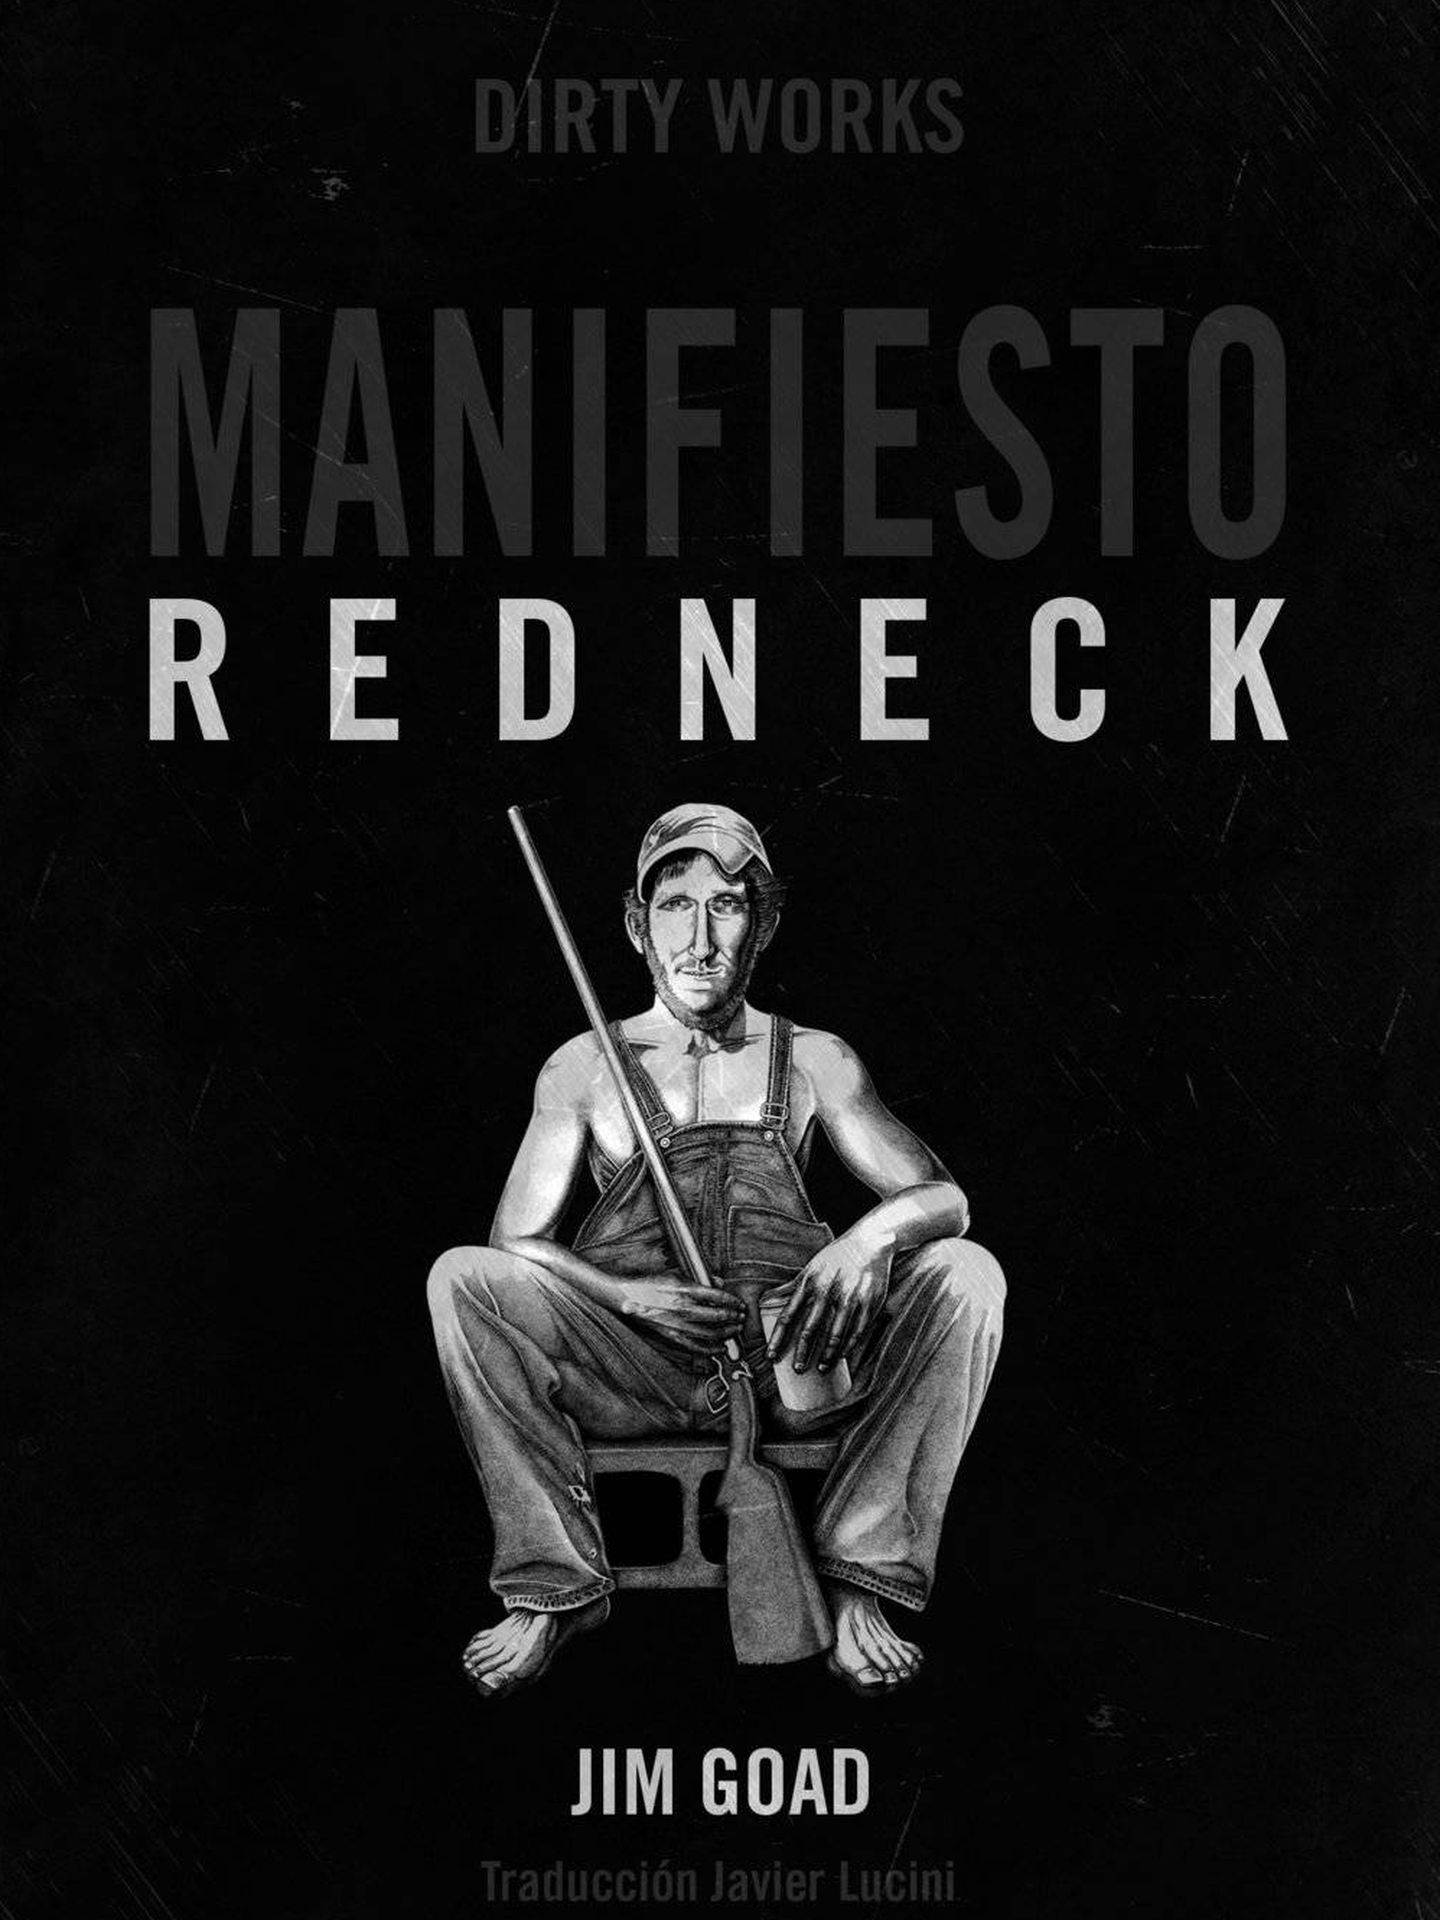 'Manifiesto Redneck'.